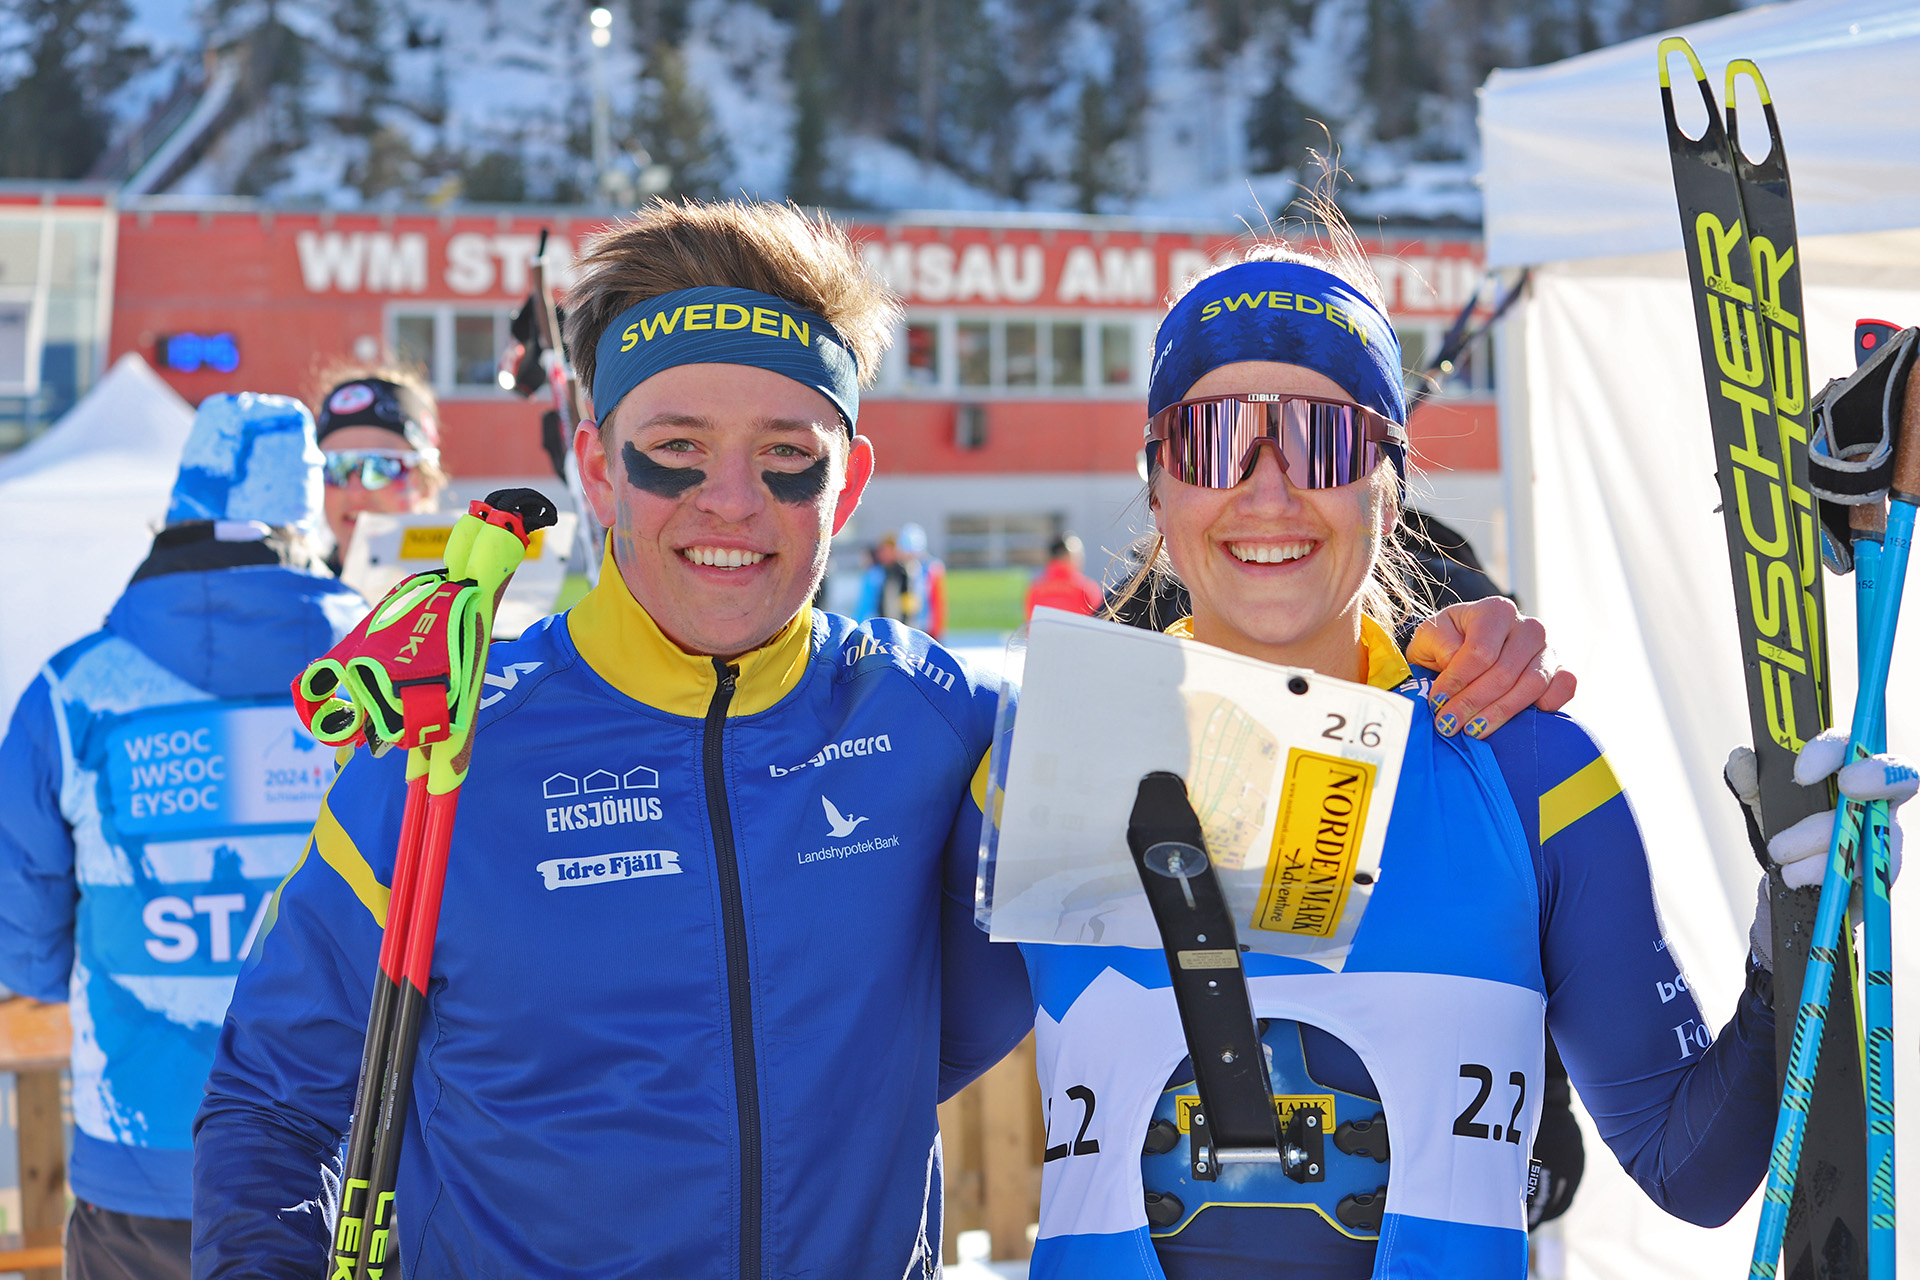  Jonatan Ståhl och Magdalena Olsson avslutade VM  i skidorientering med silver i mixstafetten.